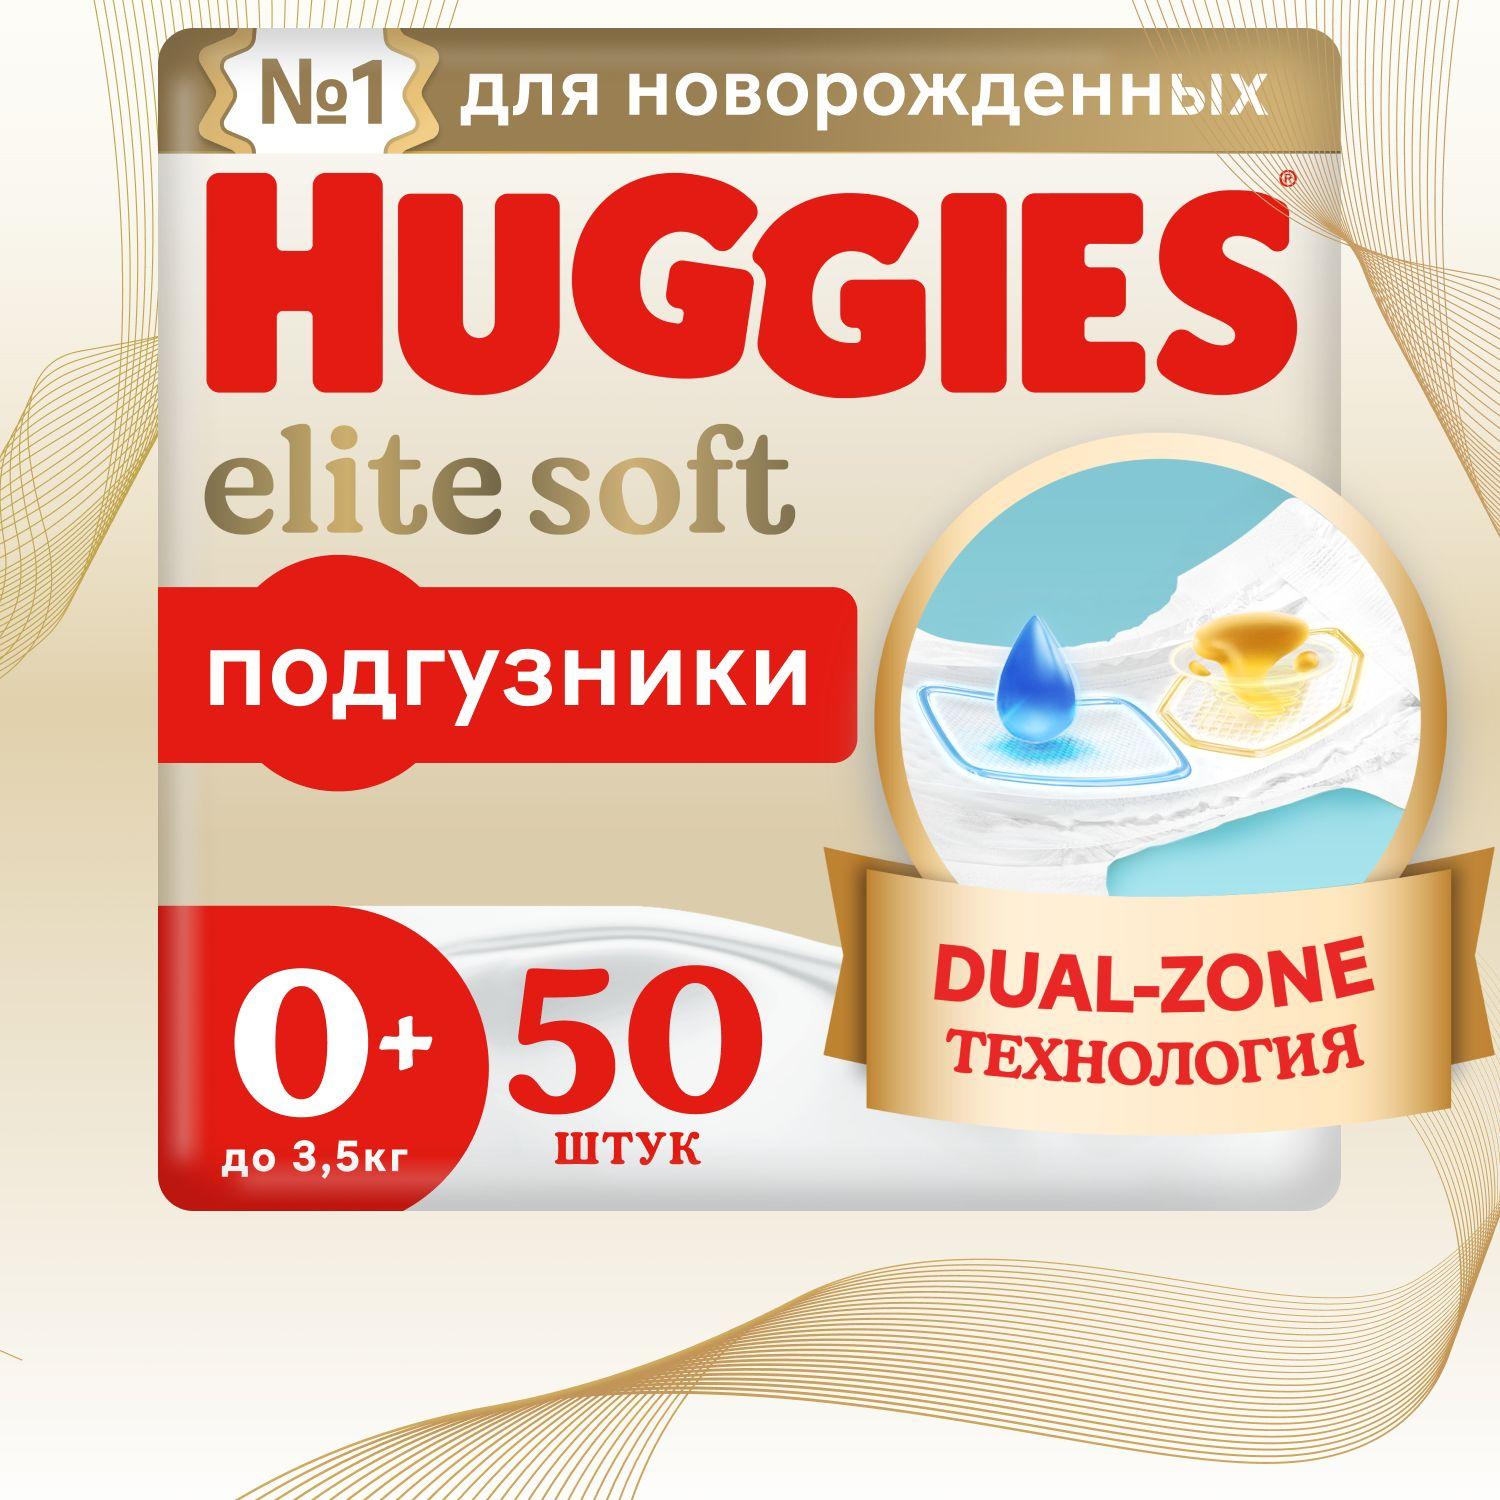 Подгузники для новорожденных Huggies Elite Soft 0 + NB размер, до 3,5кг, 50 шт